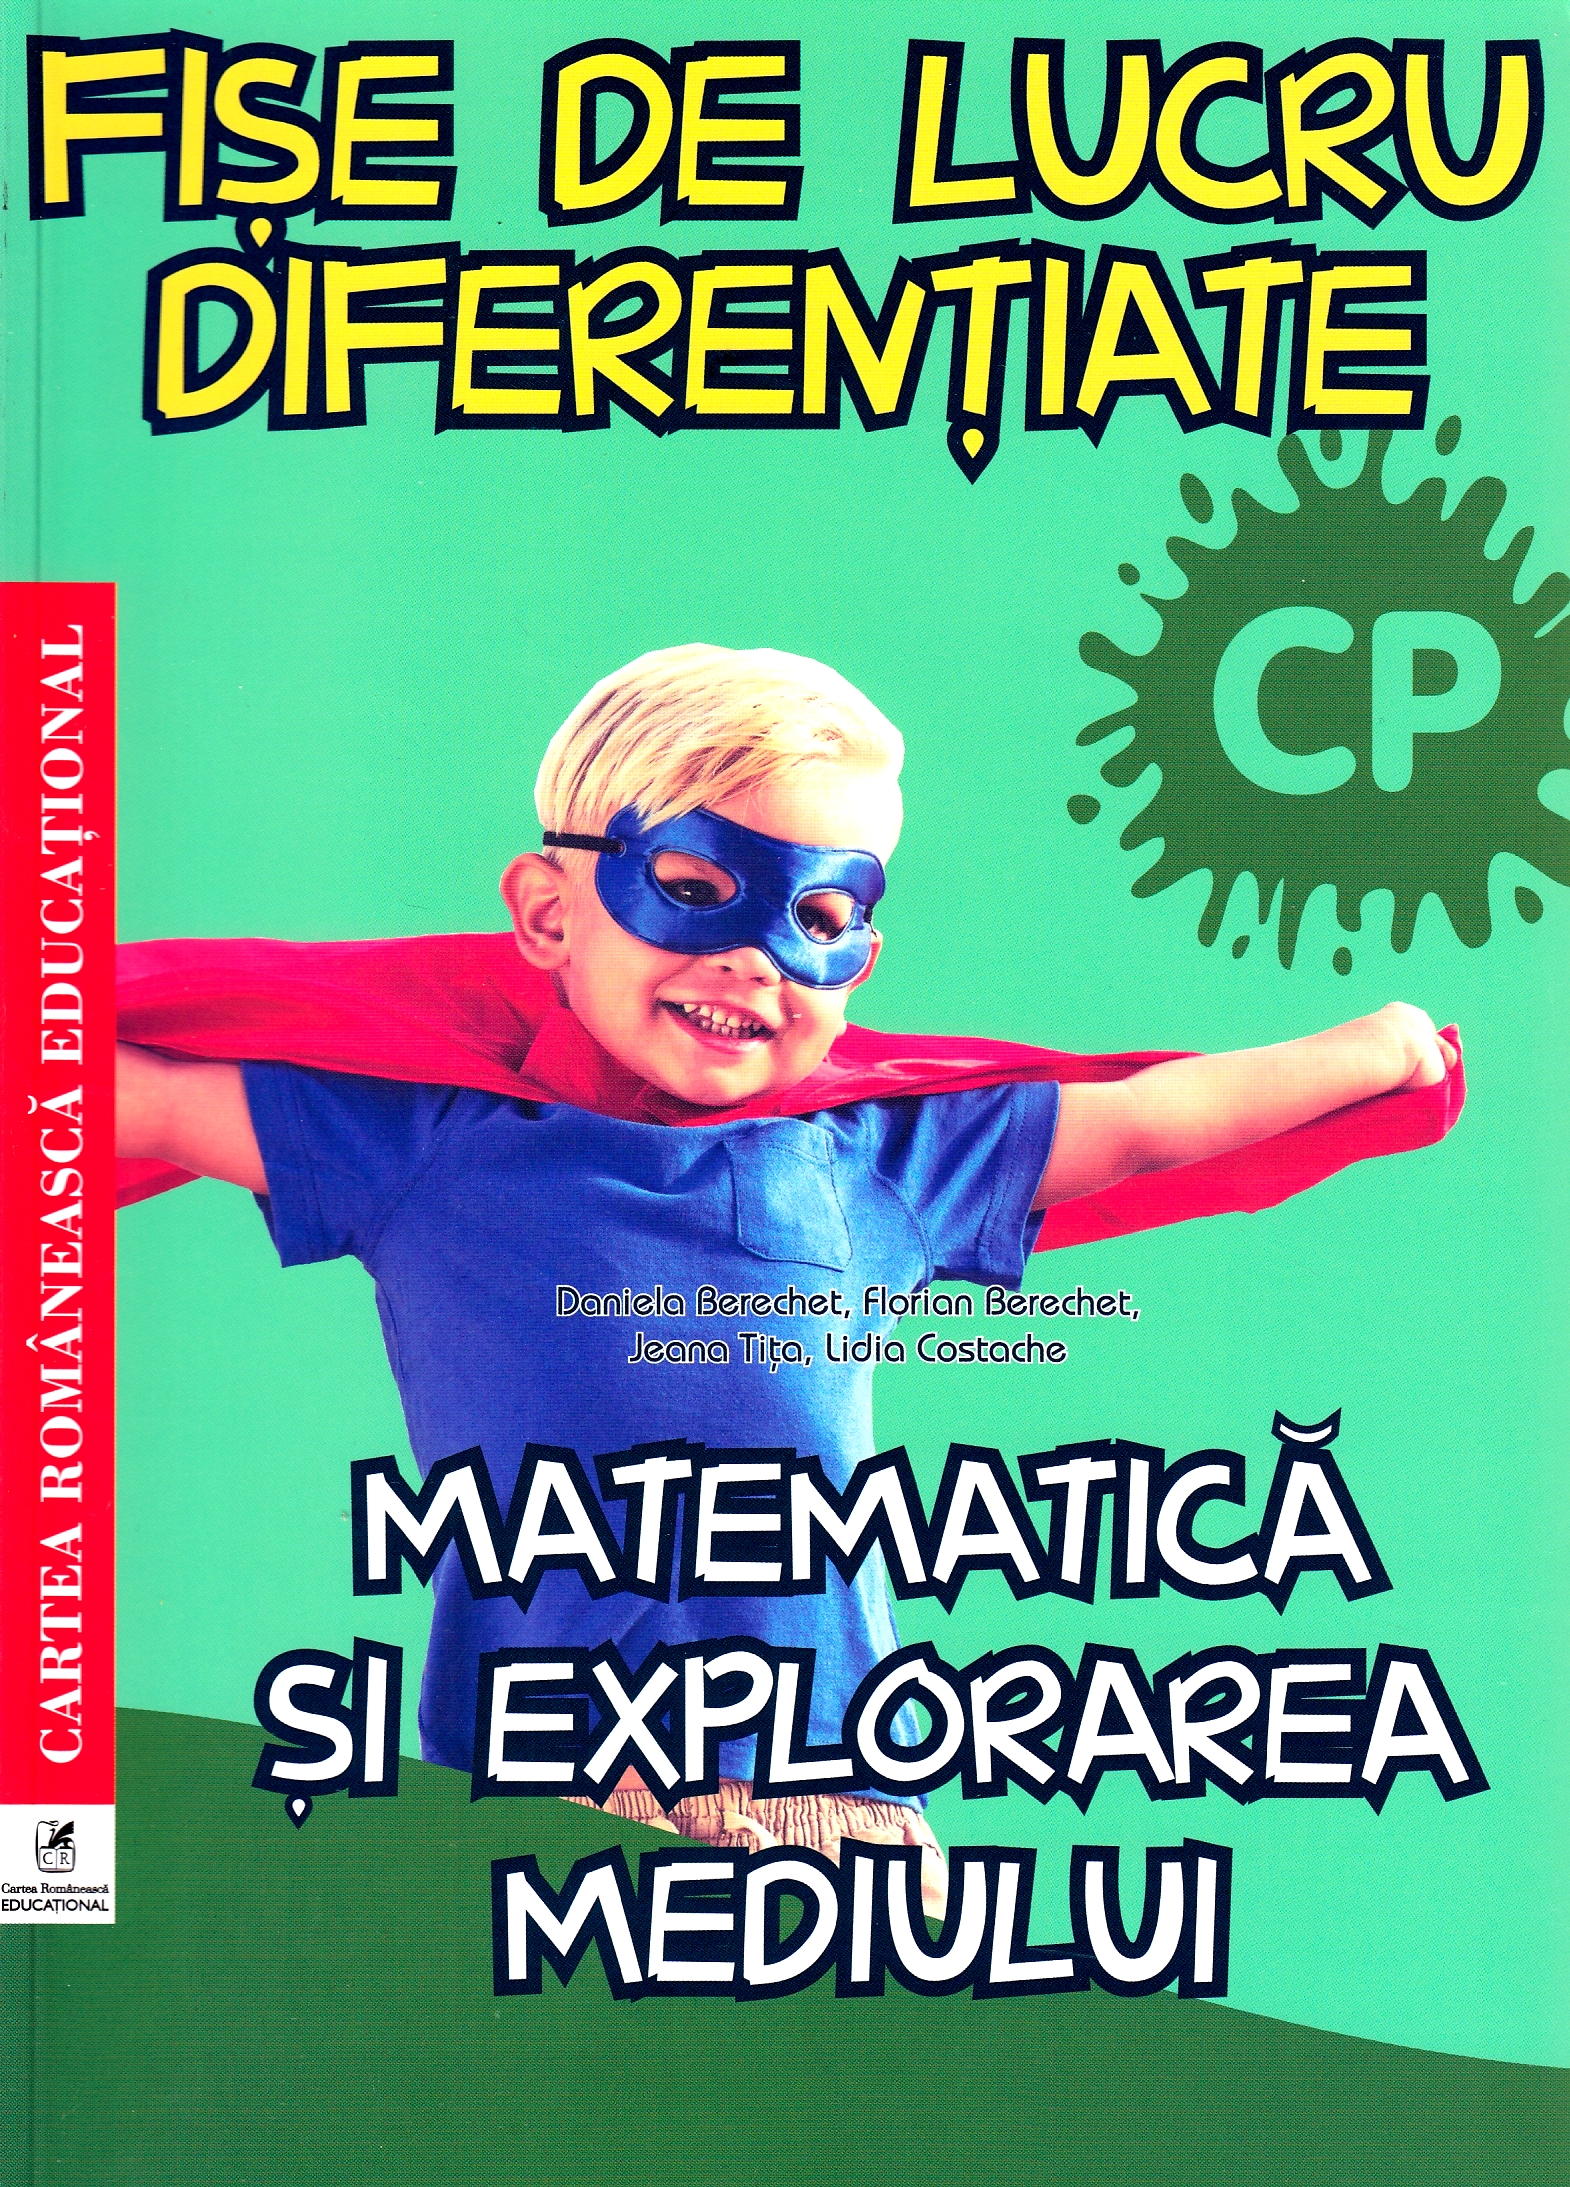 Matematica si explorarea mediului - Clasa pregatitoare - Fise de lucru diferentiate - Daniela Berechet, Florian Berechet